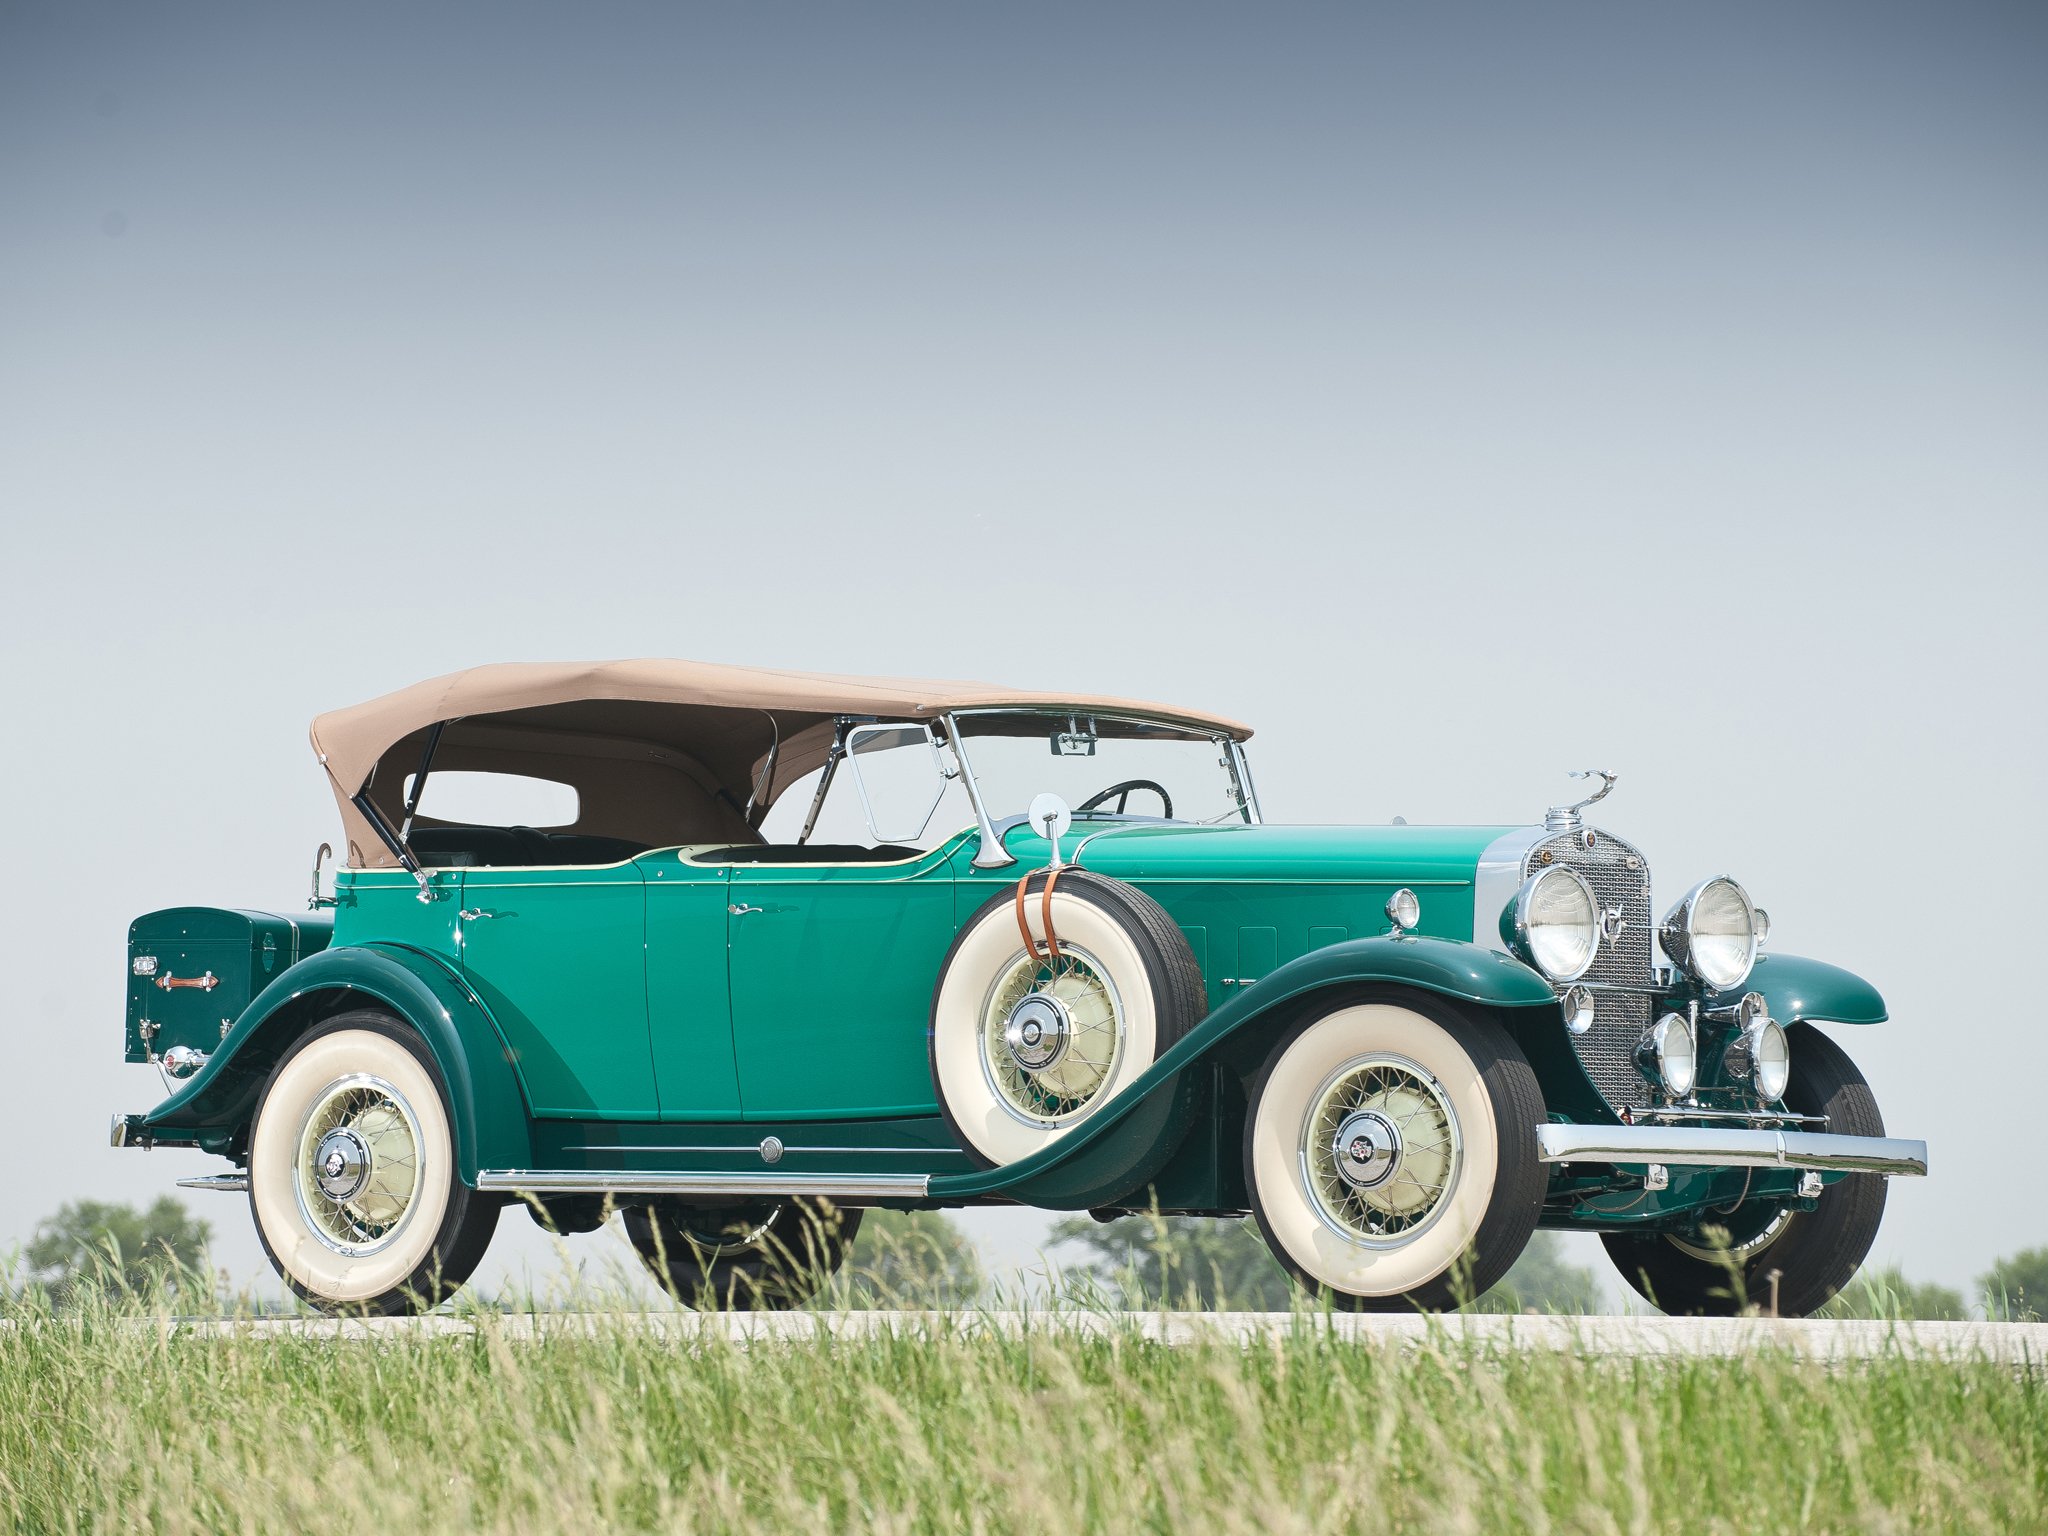 1931 Cadillac V12 Wallpapers